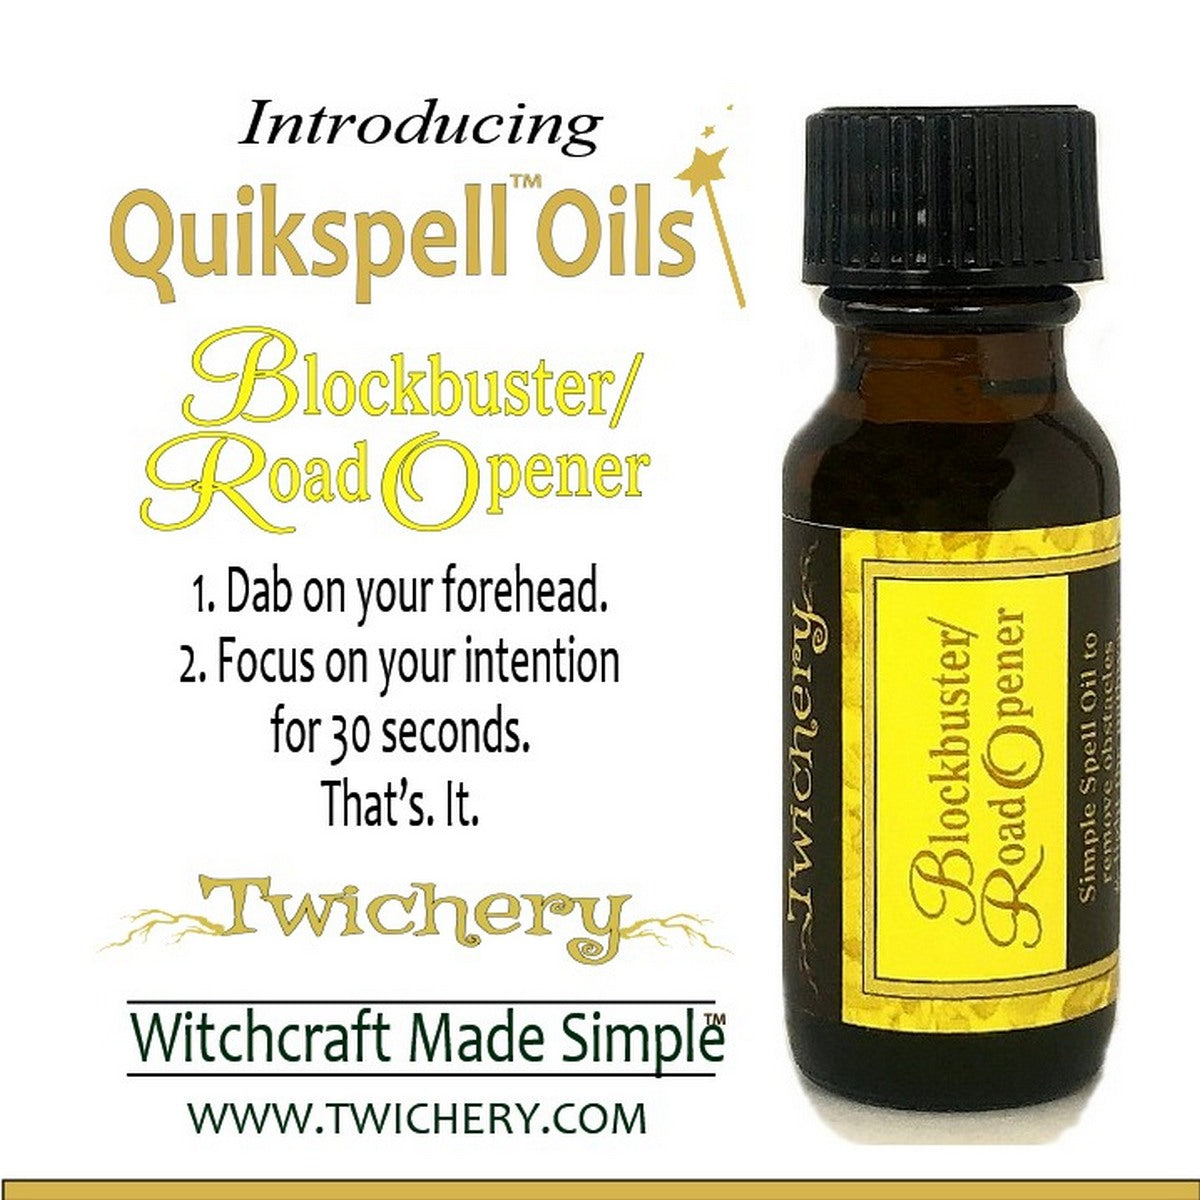 Twichery Blockbuster/Road Opener Quikspell Oil, Hoodoo, Voodoo, Witchcraft Made Simple